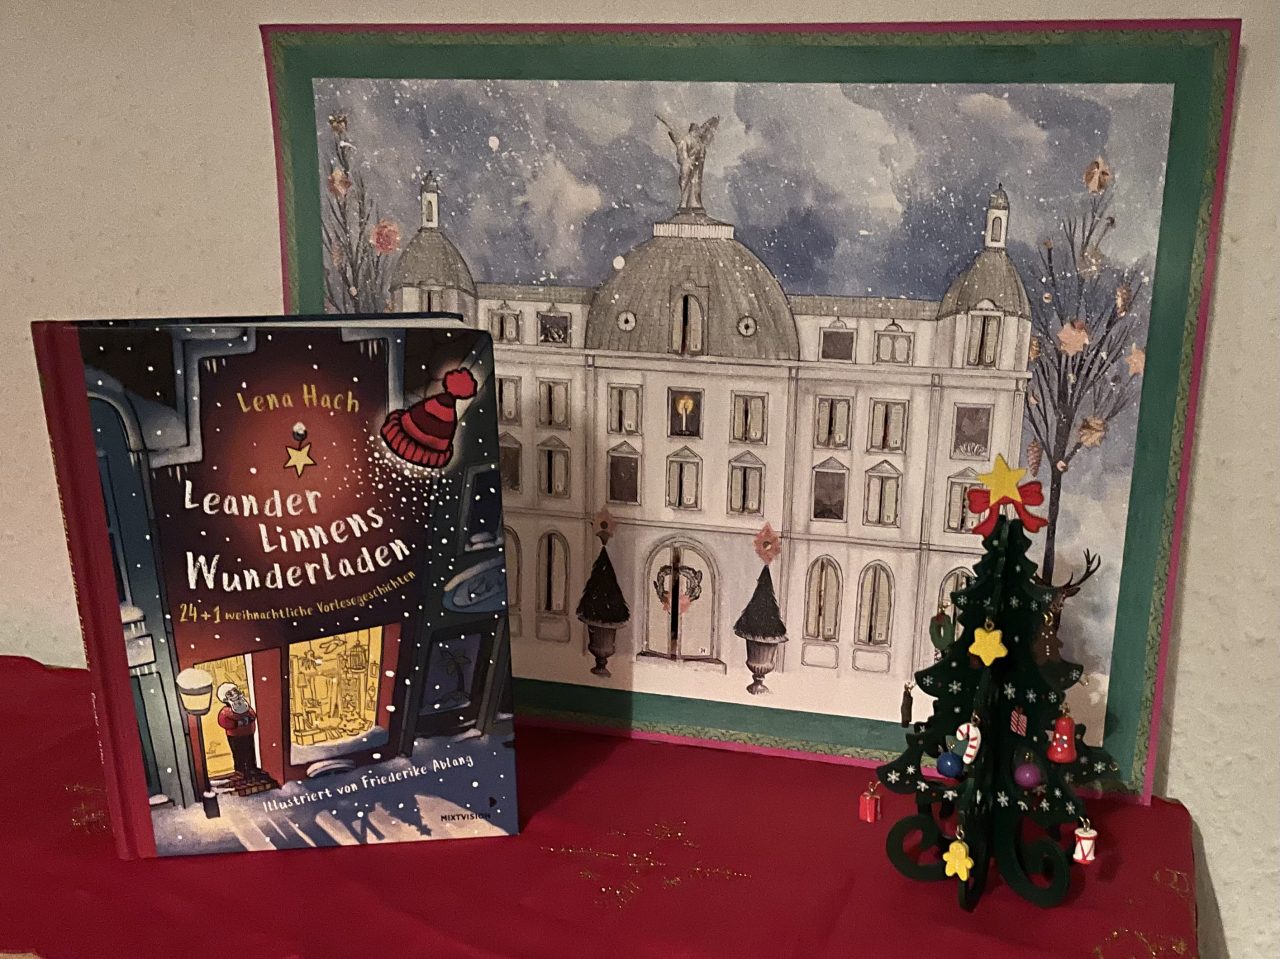 das Adventskalenderbuch "Leander Linnens Wunderladen" steht neben einem Bilderadventskalender "Winterschloss" neben einem kleinen Holzweihnachtsbaum